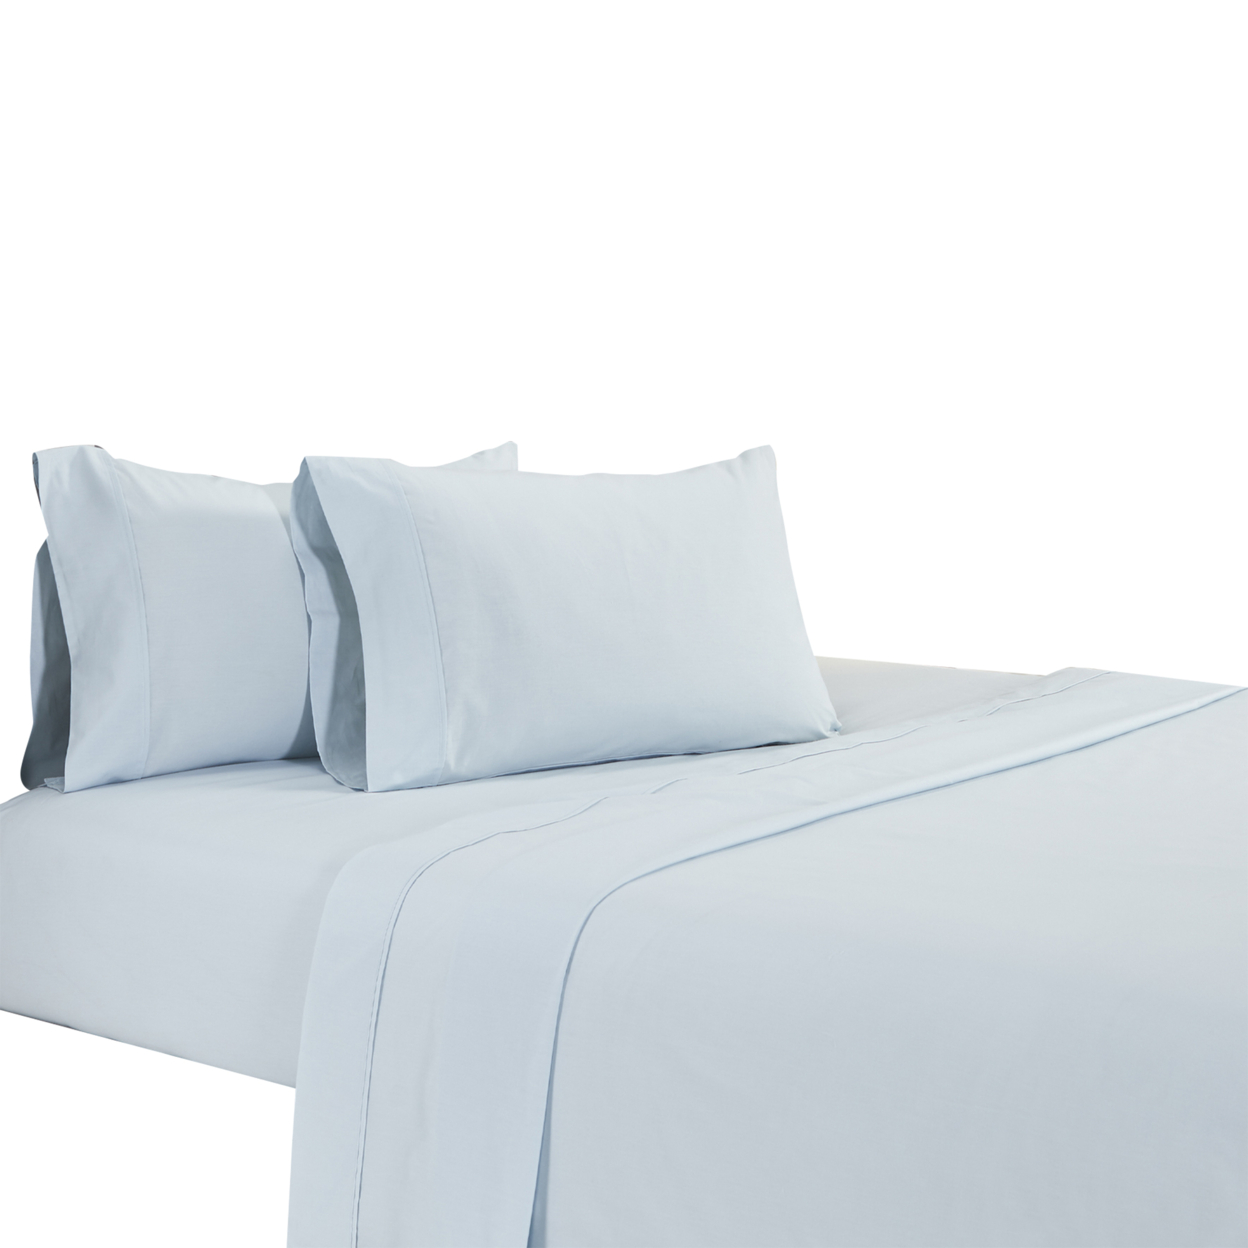 Matt 4 Piece California King Bed Sheet Set, Soft Organic Cotton, Light Blue- Saltoro Sherpi